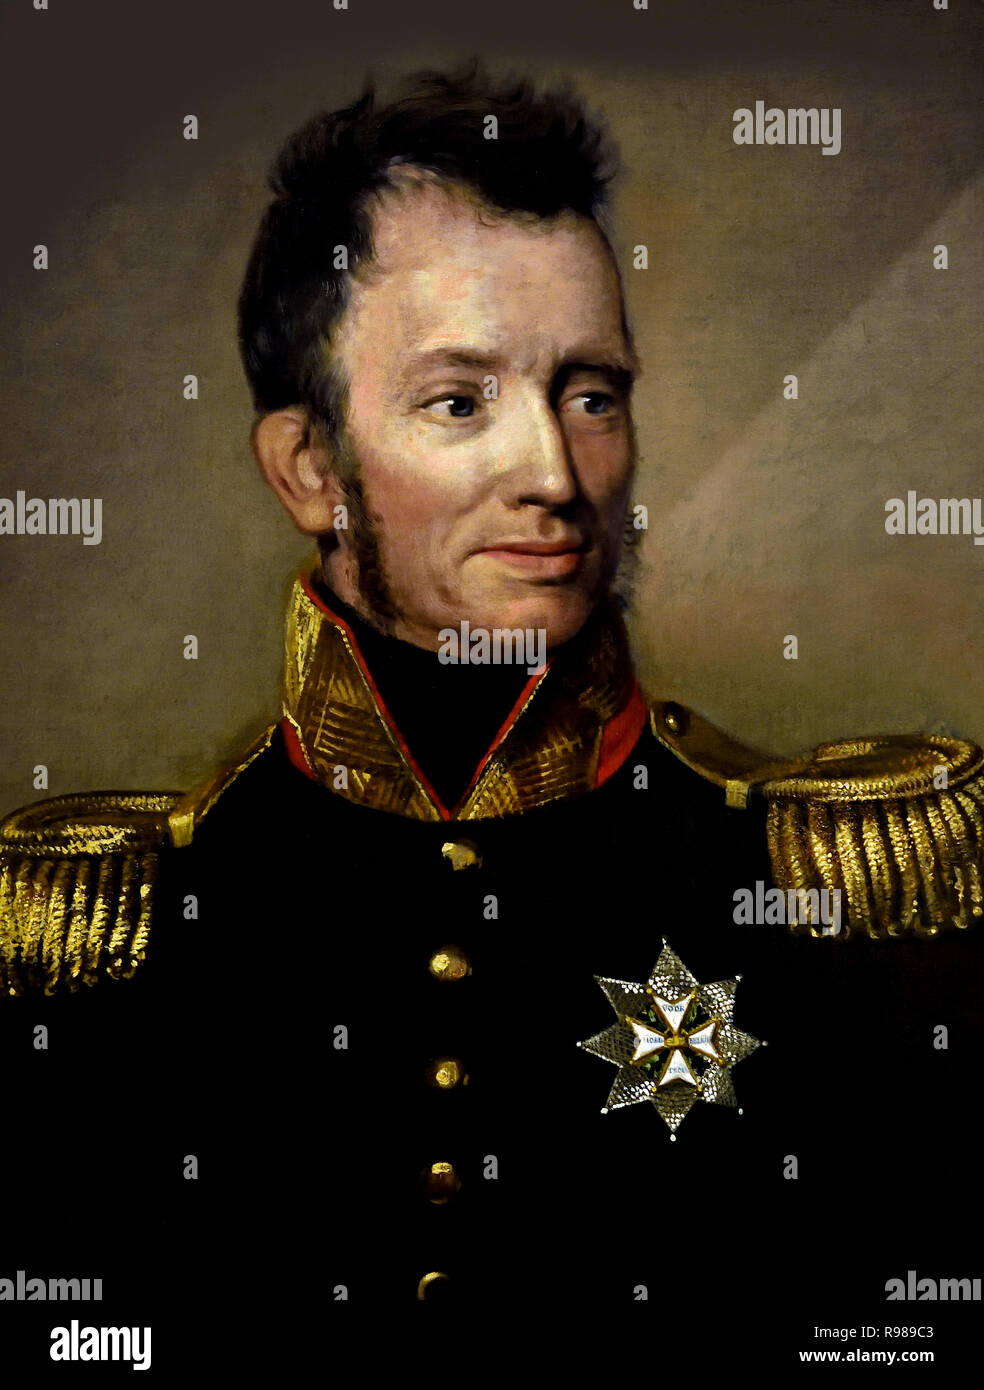 König Wilhelm I (Willem Frederik, Prinz von Oranien-nassau 1772-1843) Prinz von Orange und der erste König der Niederlande, Großherzog von Luxemburg. Stockfoto